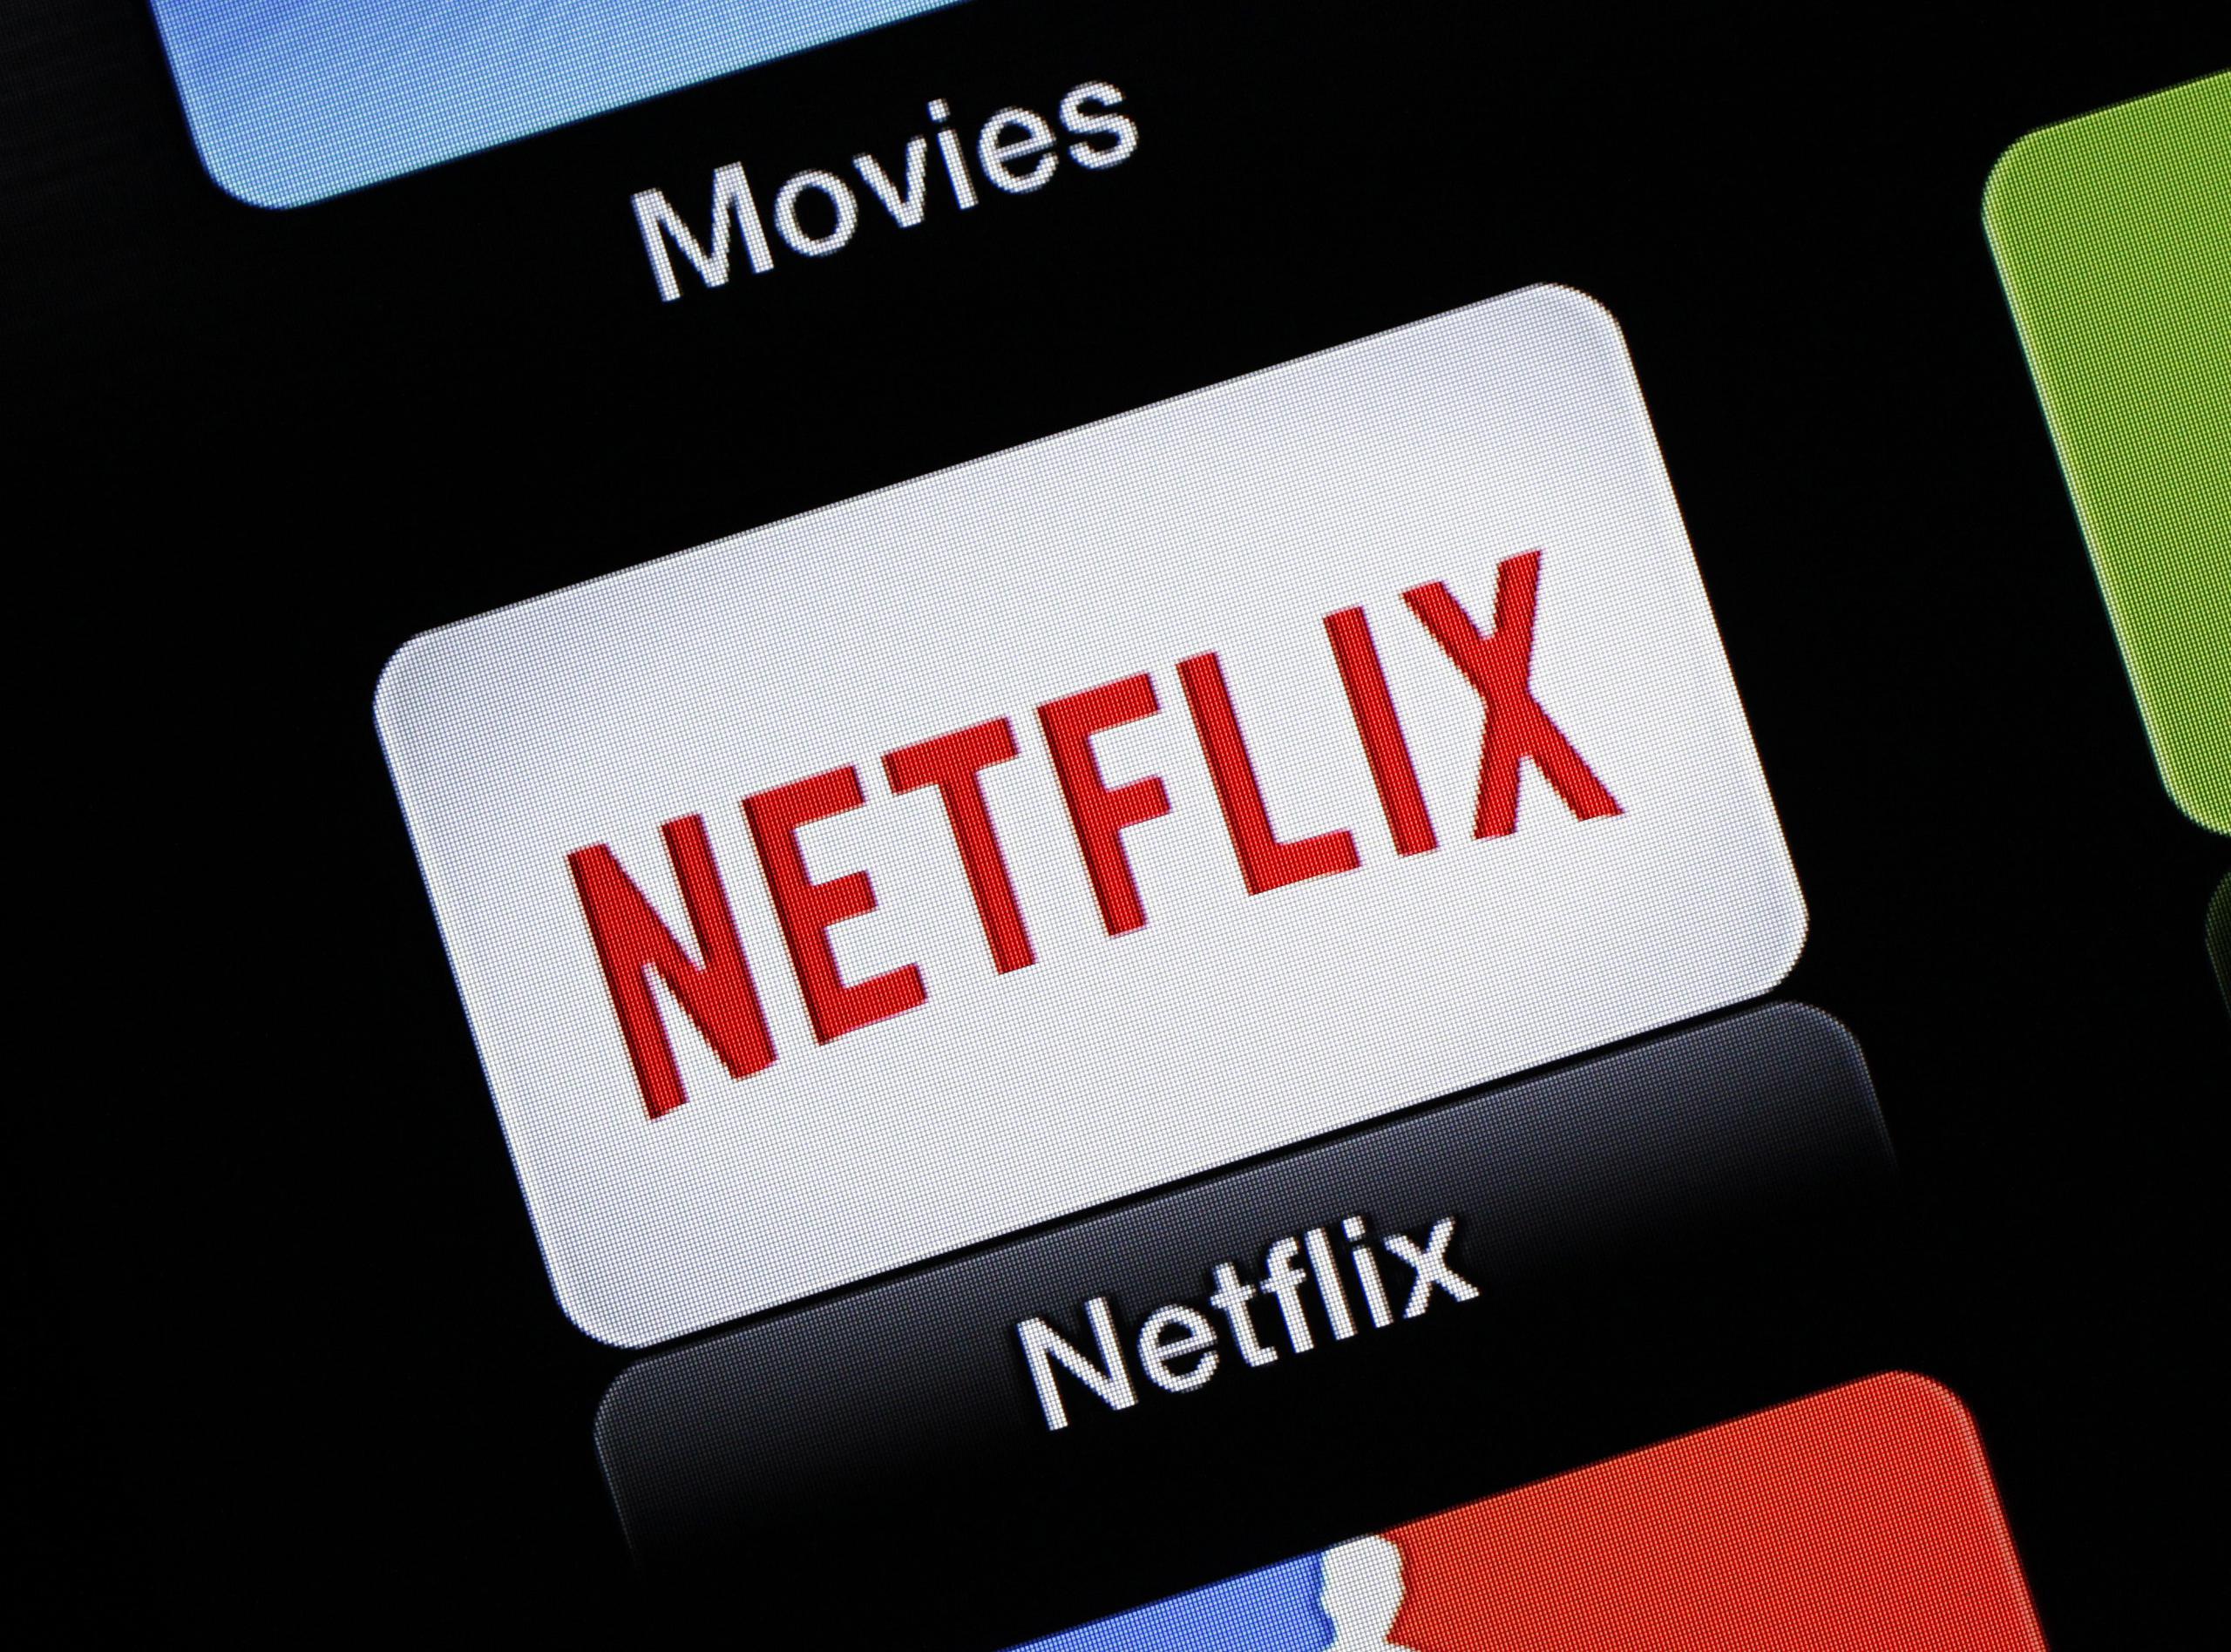 Netflix reveló este miércoles sus planes para evitar el compartir contraseñas de cuentas en una reciente actualización de su centro de ayuda.